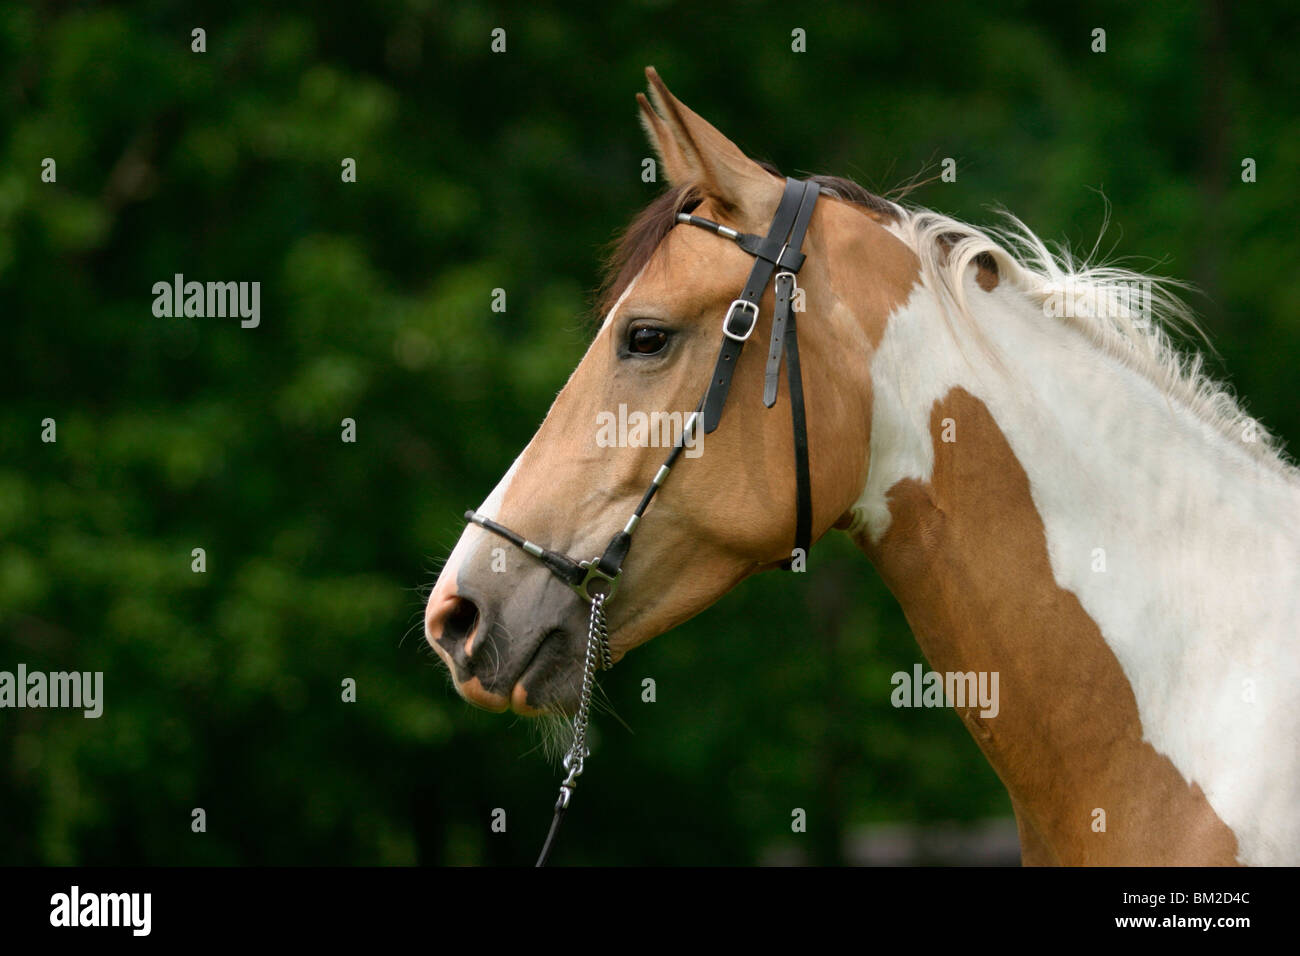 Araberpaint Portrait / horse head Stock Photo